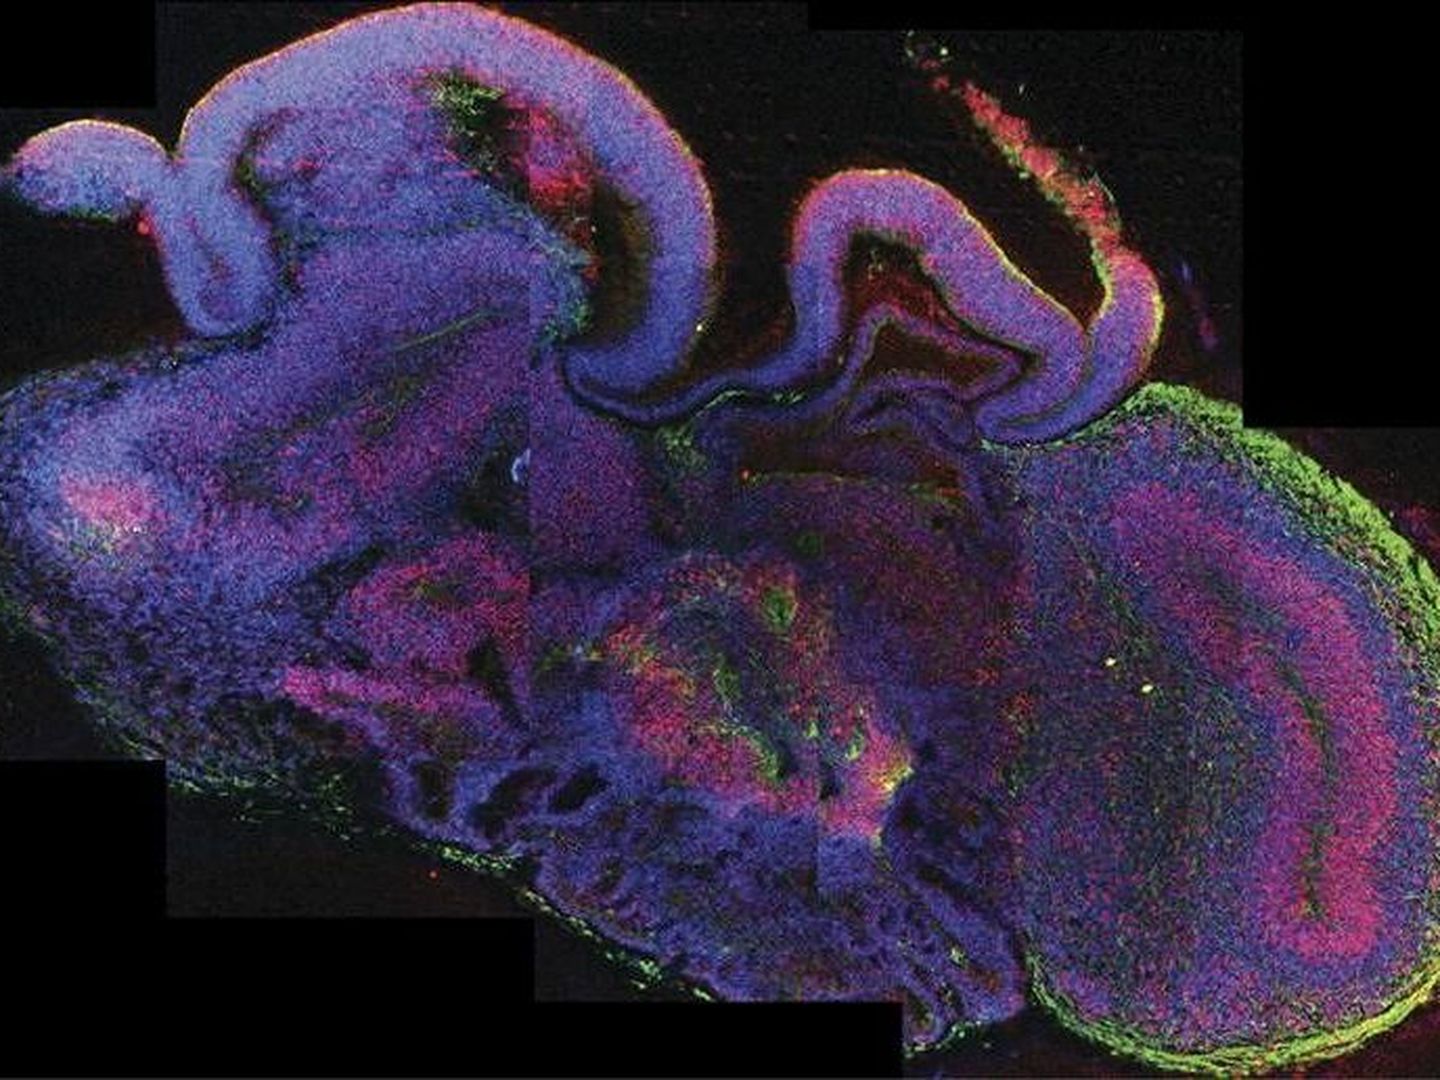 Muestra del desarrollo de las diferentes regiones del cerebro, con todas las células en azul, las células madre neuronales en rojo y las neuronas en verde